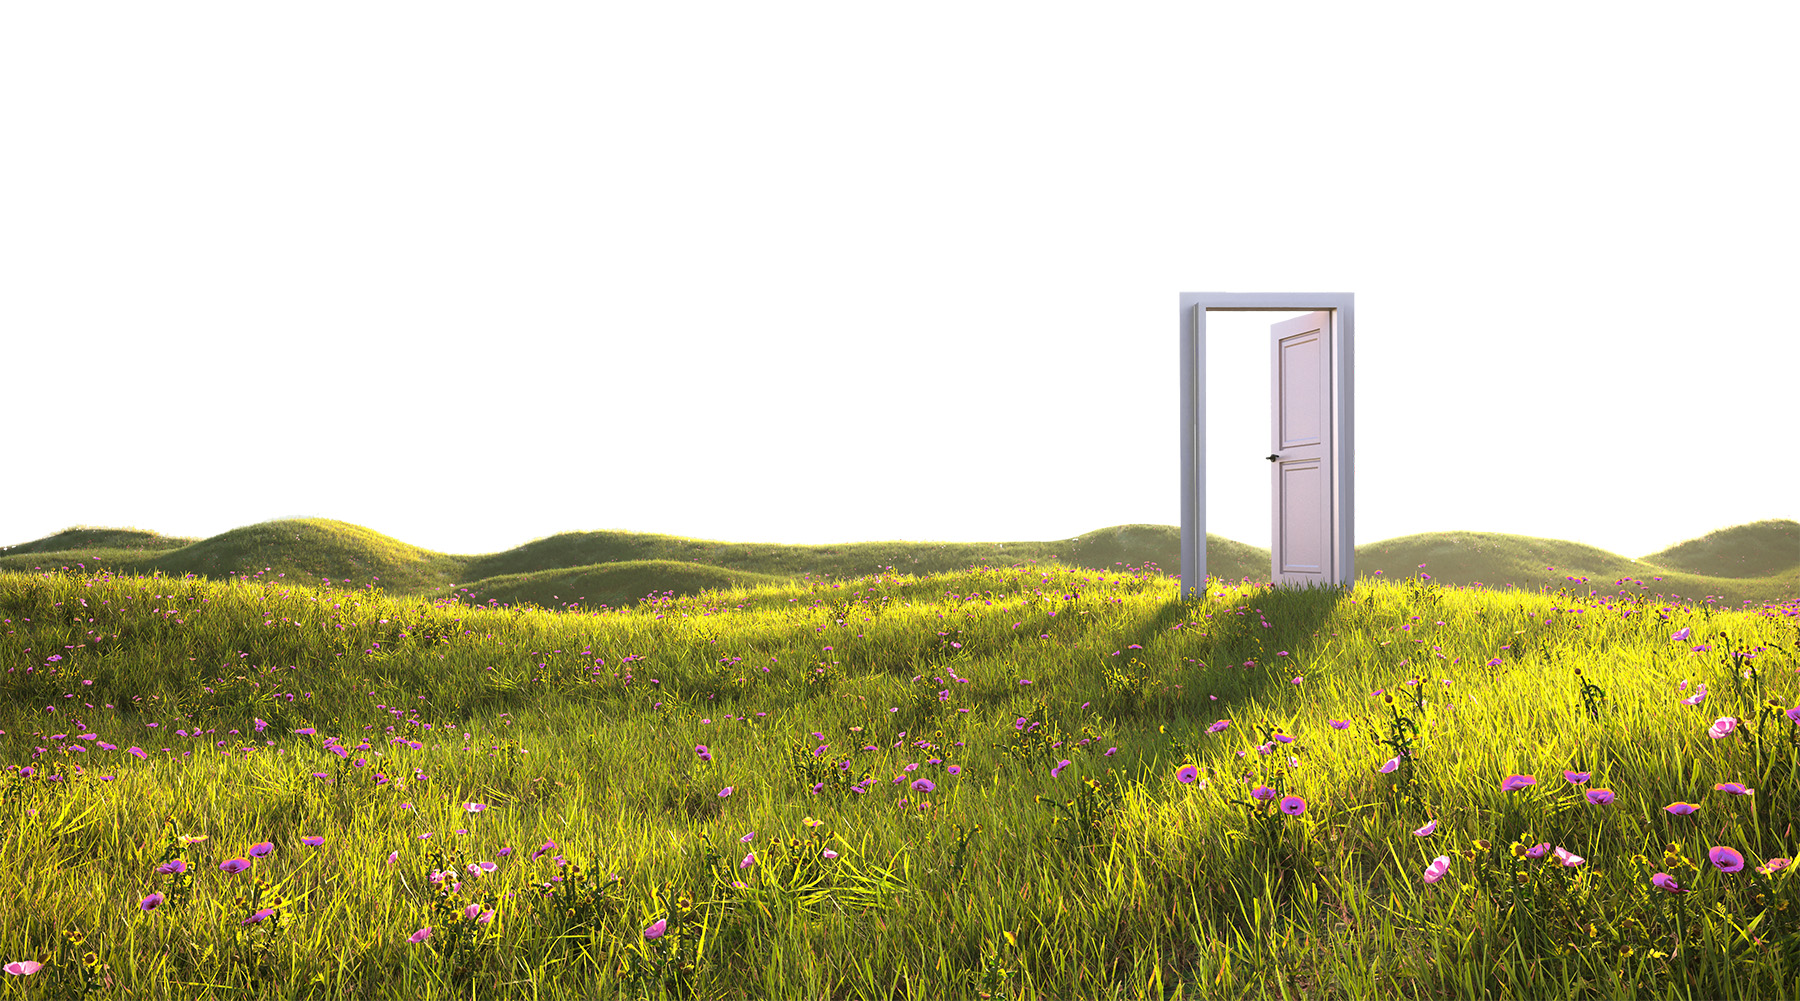 Image is of an open door. The door is set in a field of flowers and grass. 